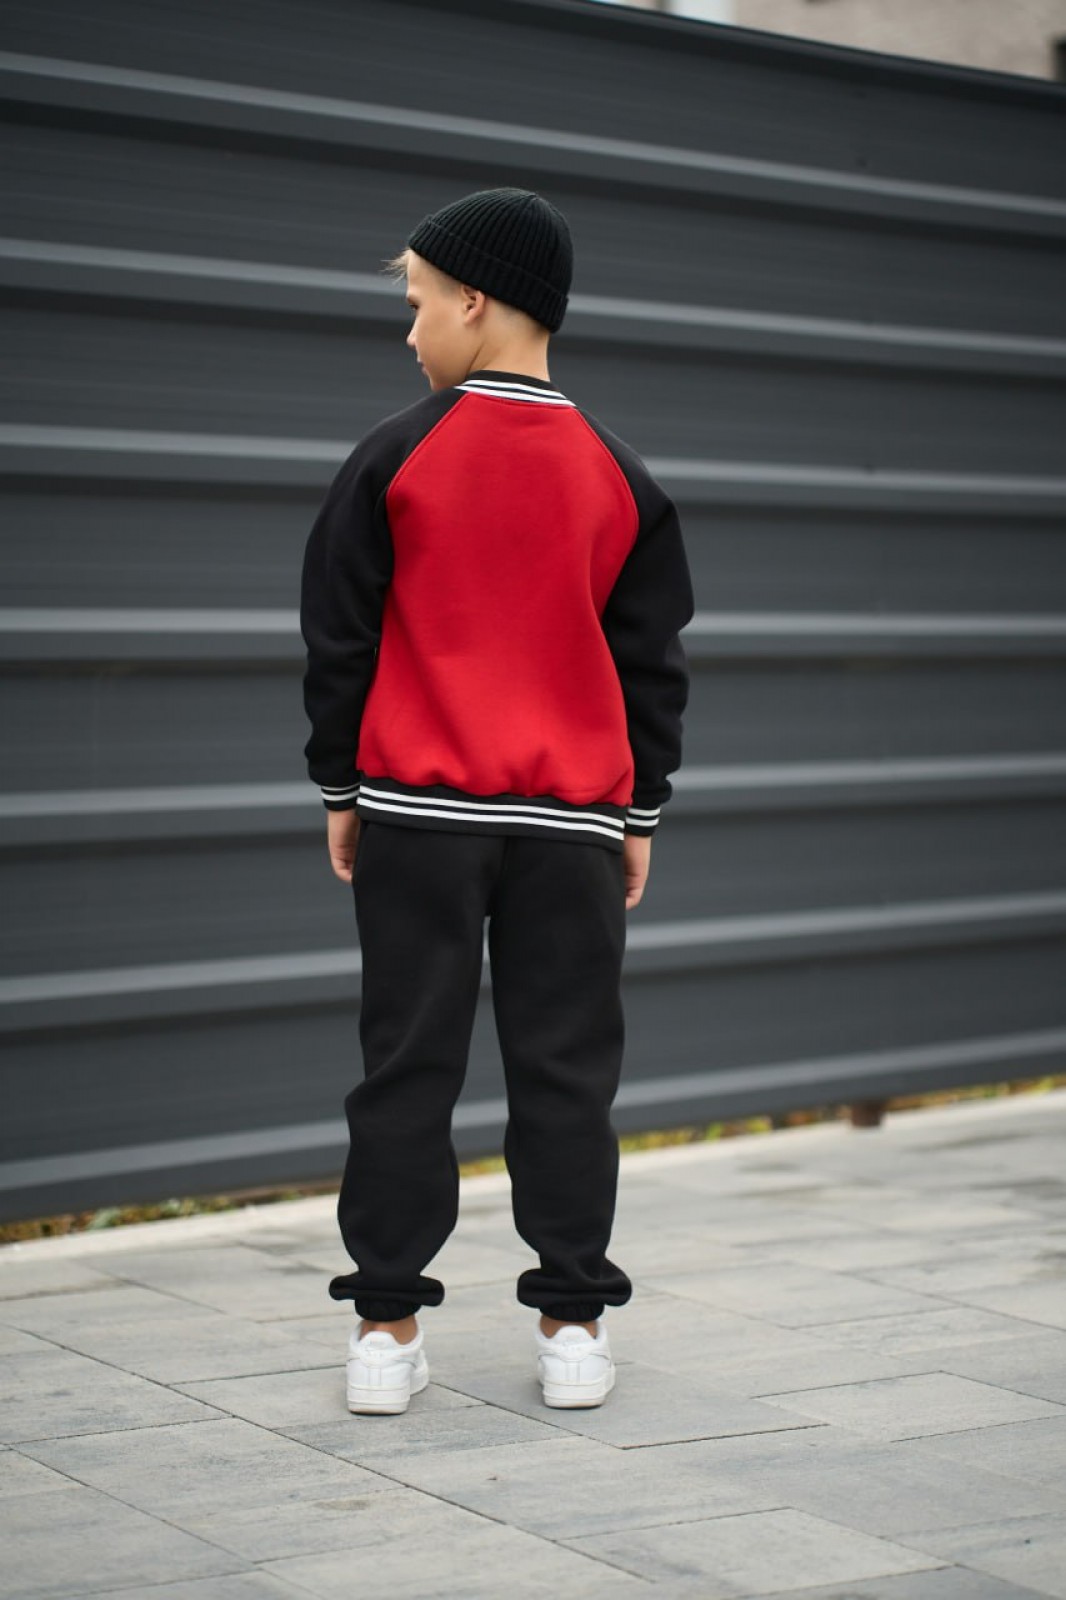 Спортивний дитячий костюм для хлопчика колір червоний р.146 443619